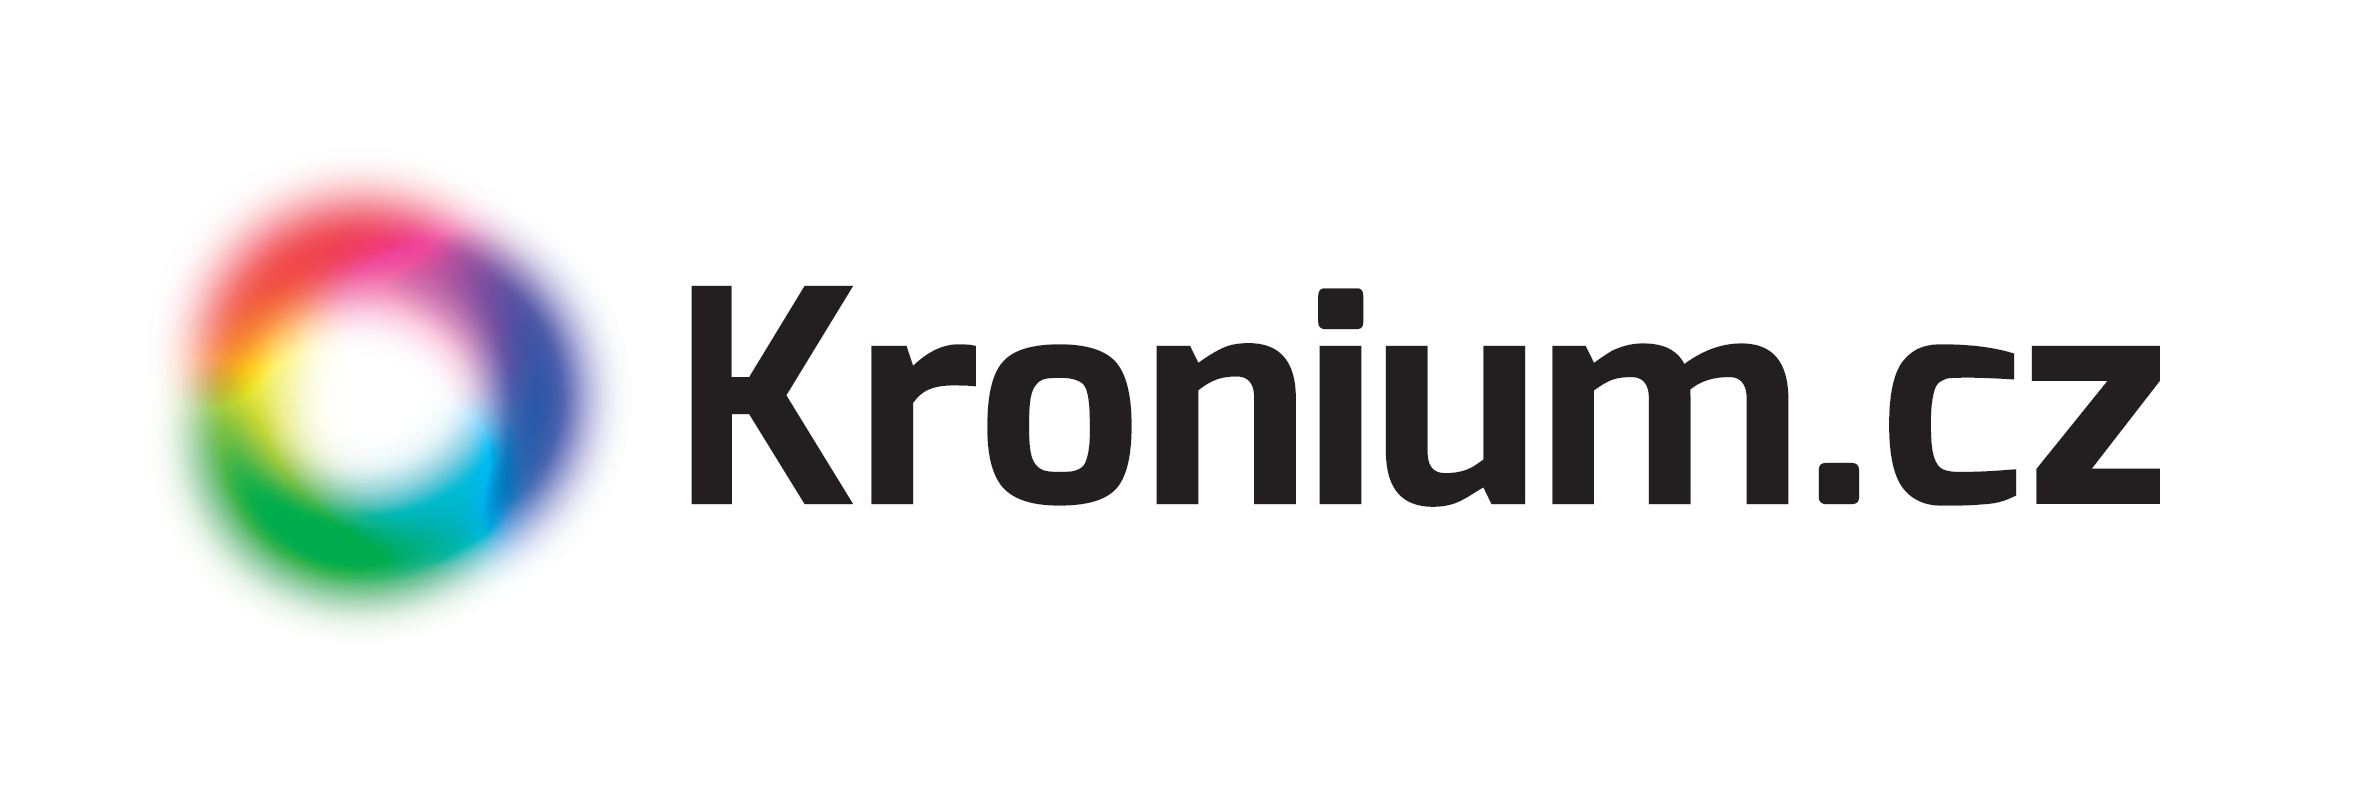 Kronium